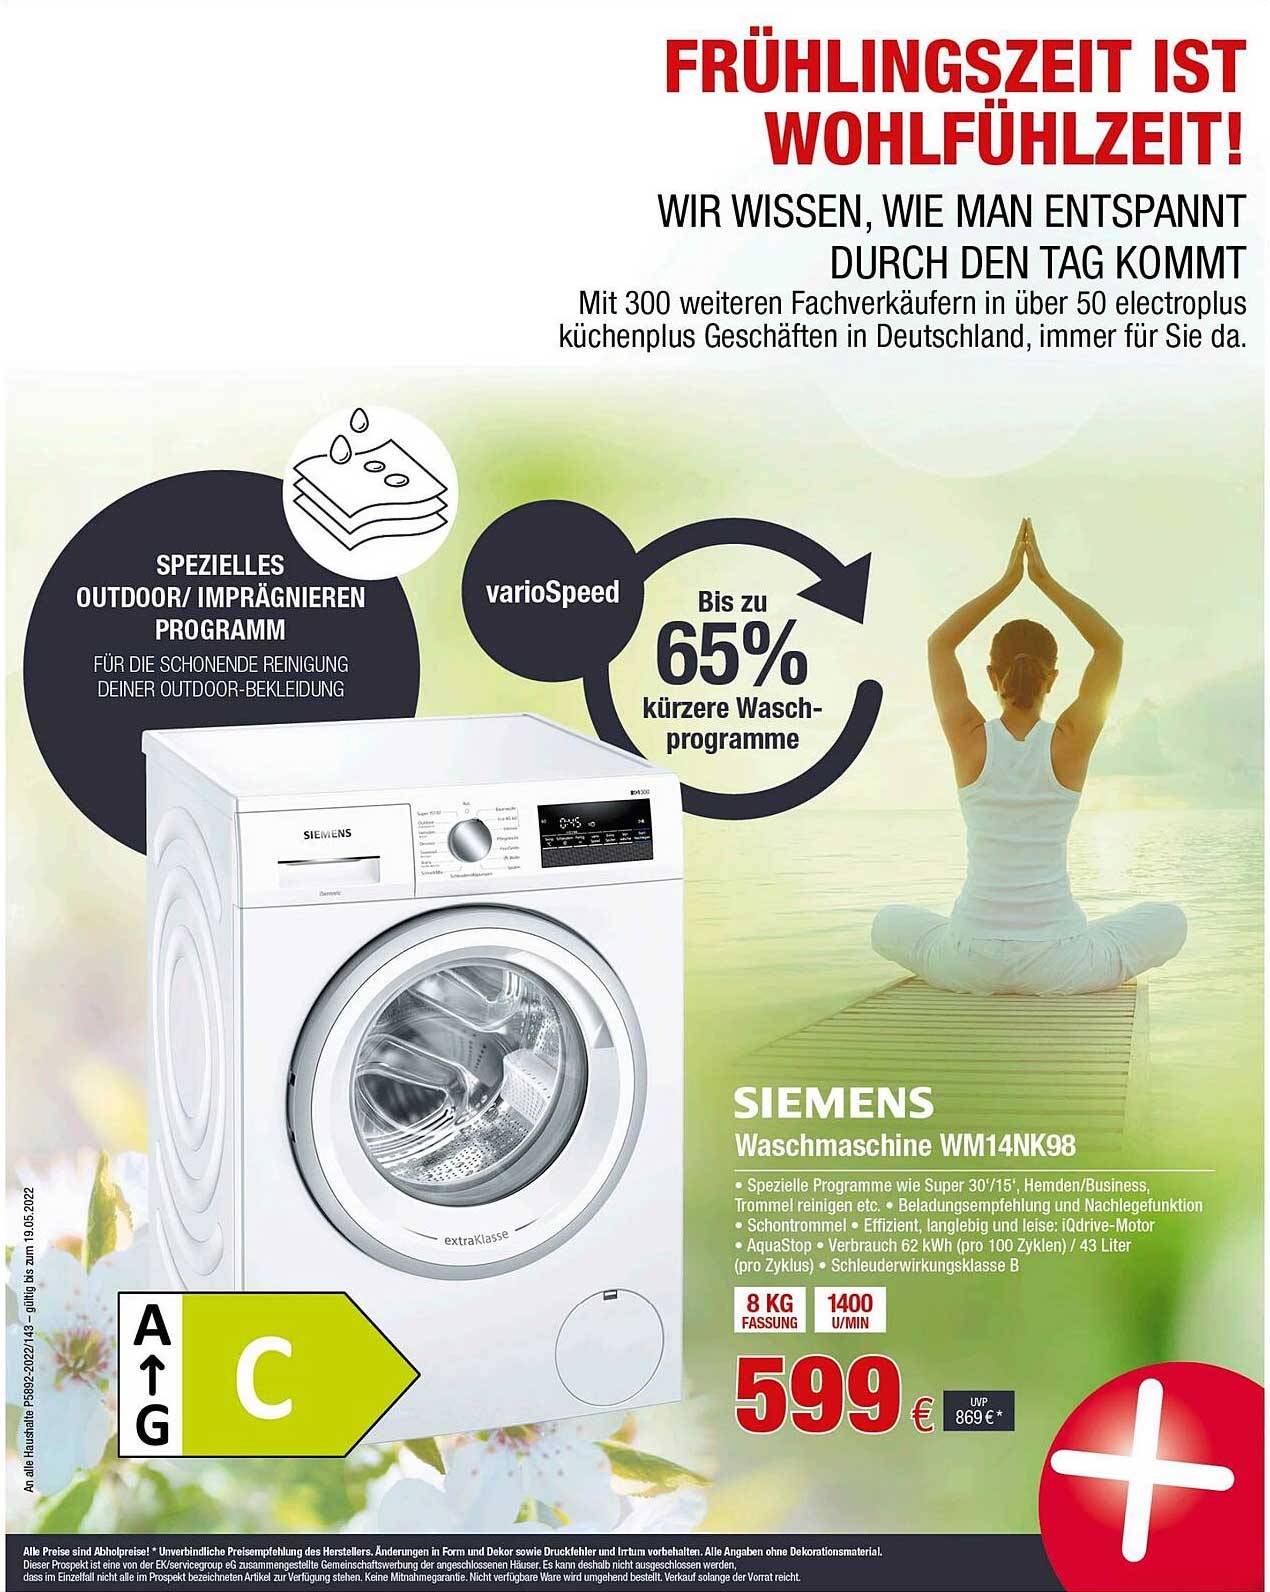 Electroplus Siemens Waschmaschine Wm14nk98